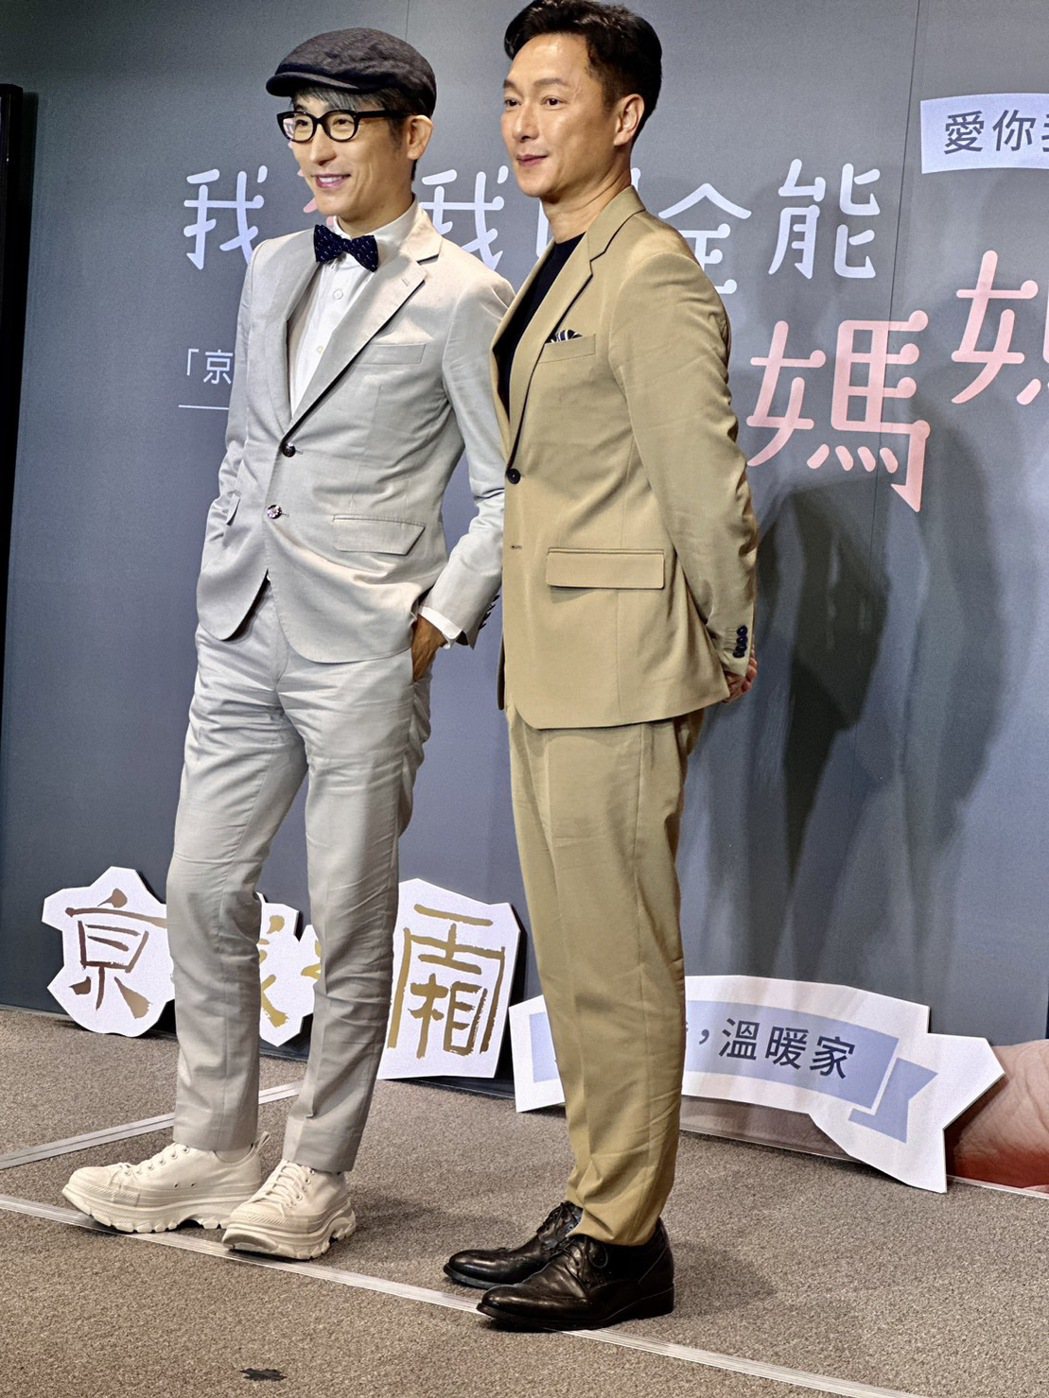 牛尔老师(左)、谢祖武出席保养品活动。记者陈慧贞／摄影